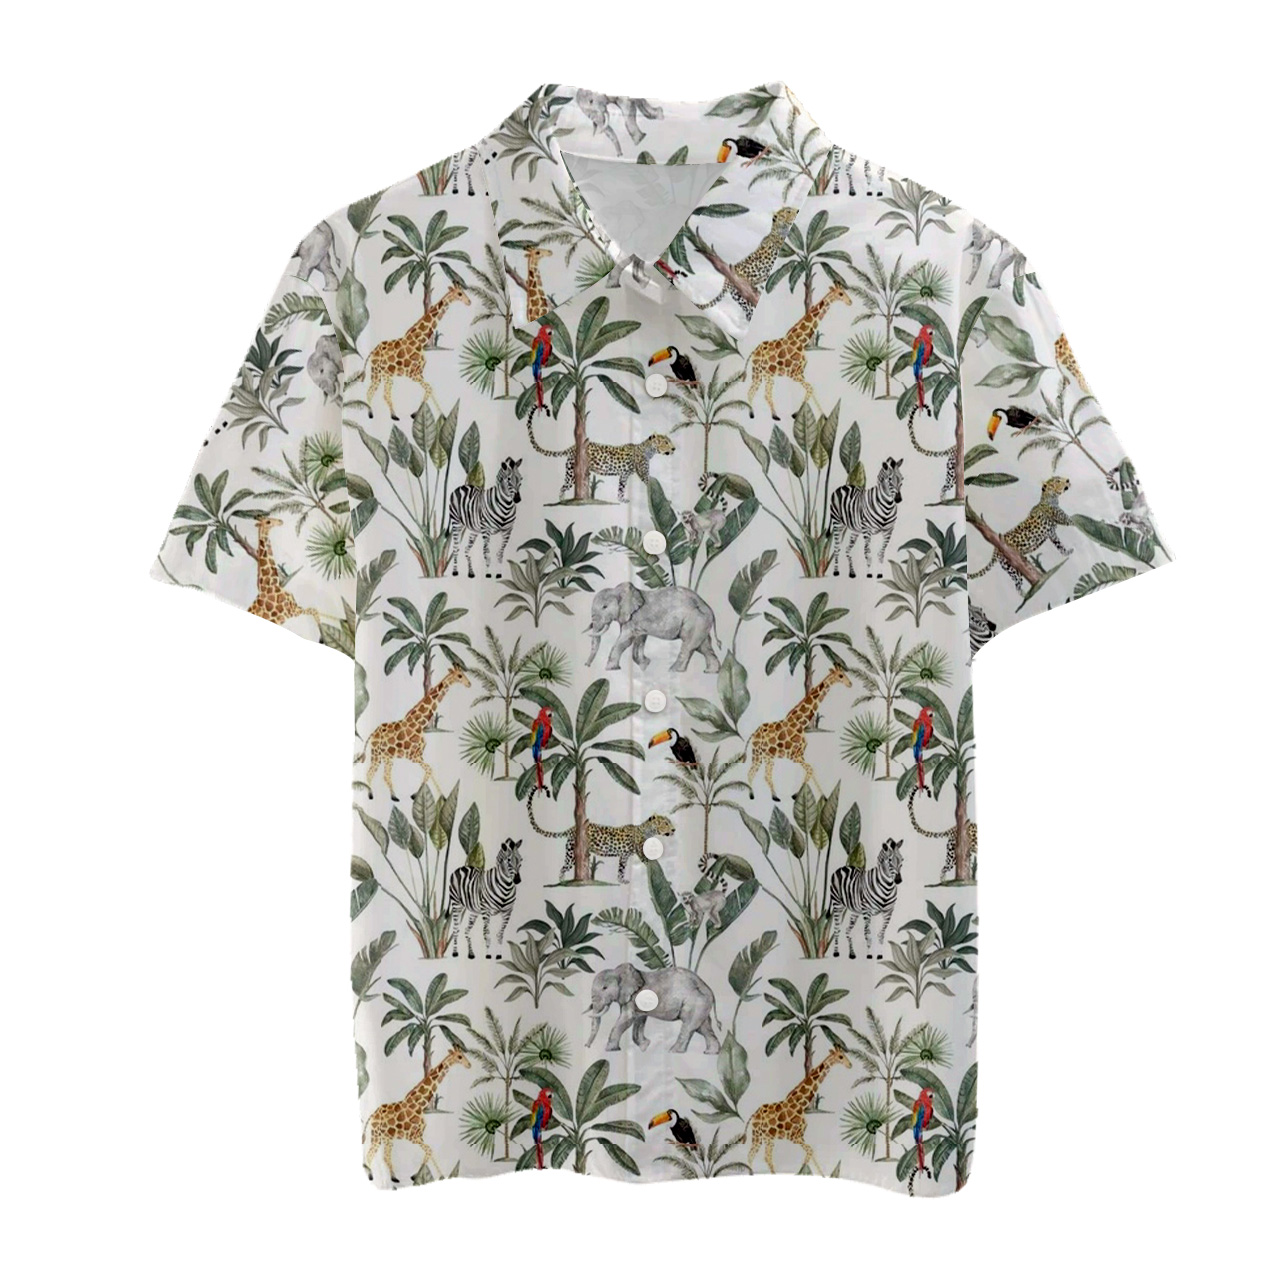 Rainforest Zoo Matching Button Shirt